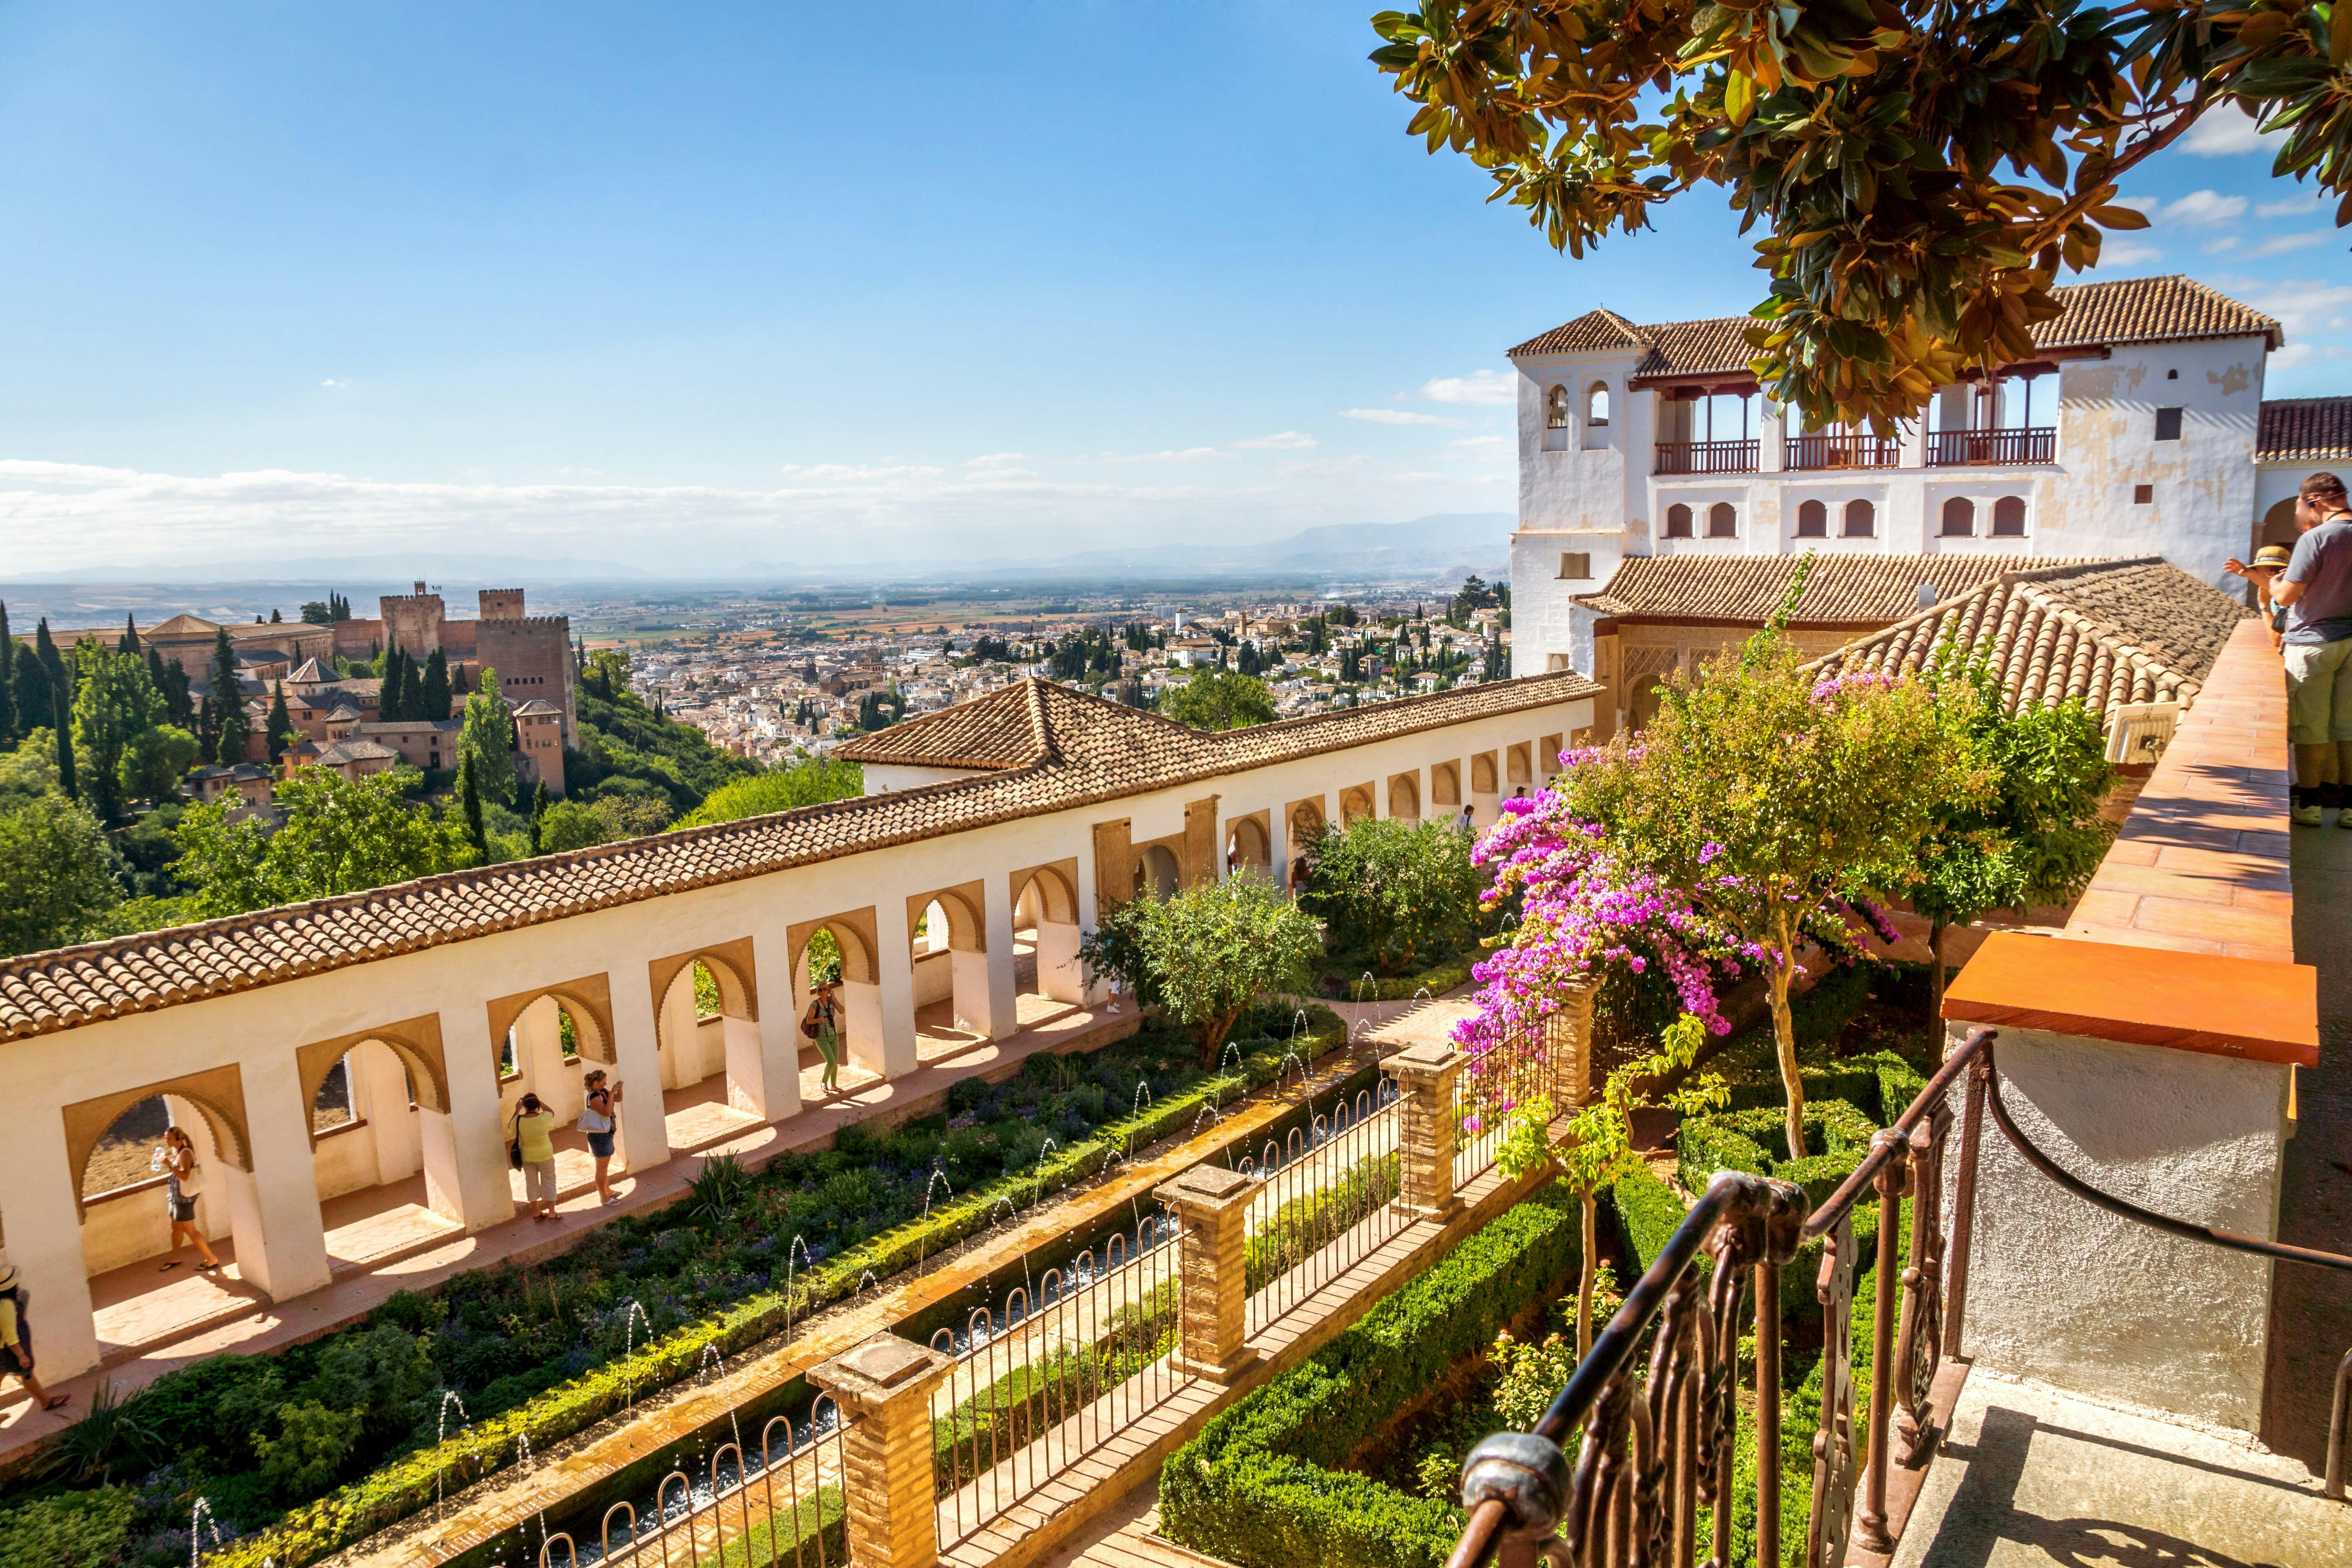 Visita a la Alhambra y al Generalife con guía experto y entradas sin colas